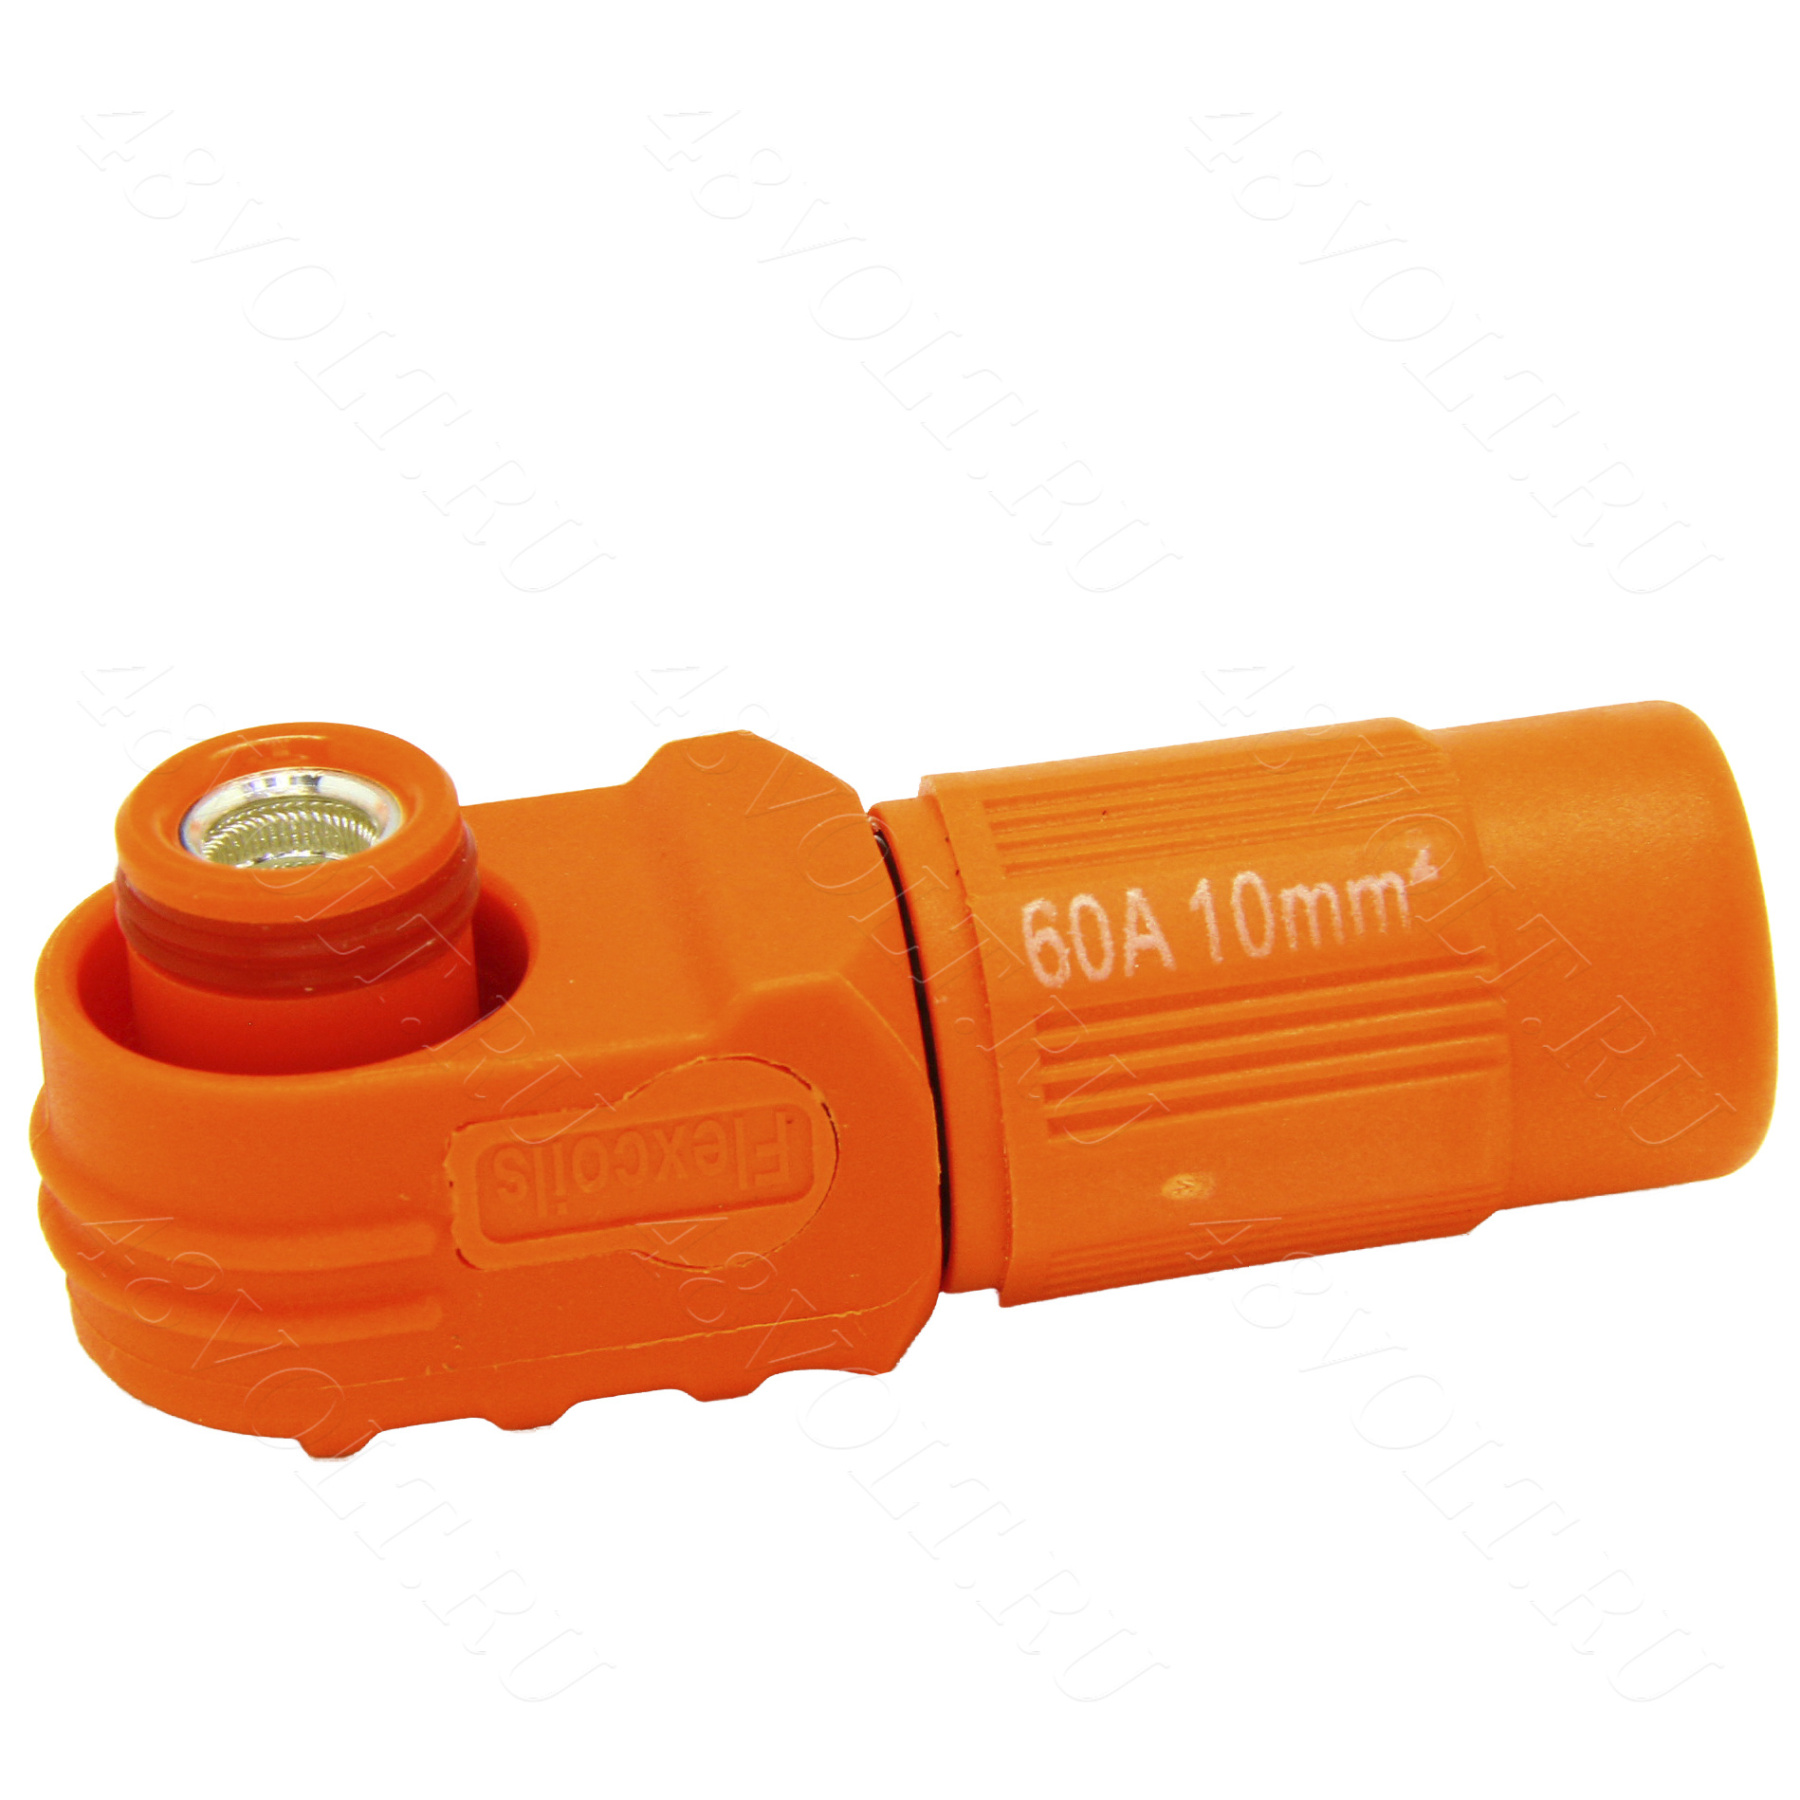 Flexcoils (SurLok) вилка оранжевая 60A (Ф6-10mm2)